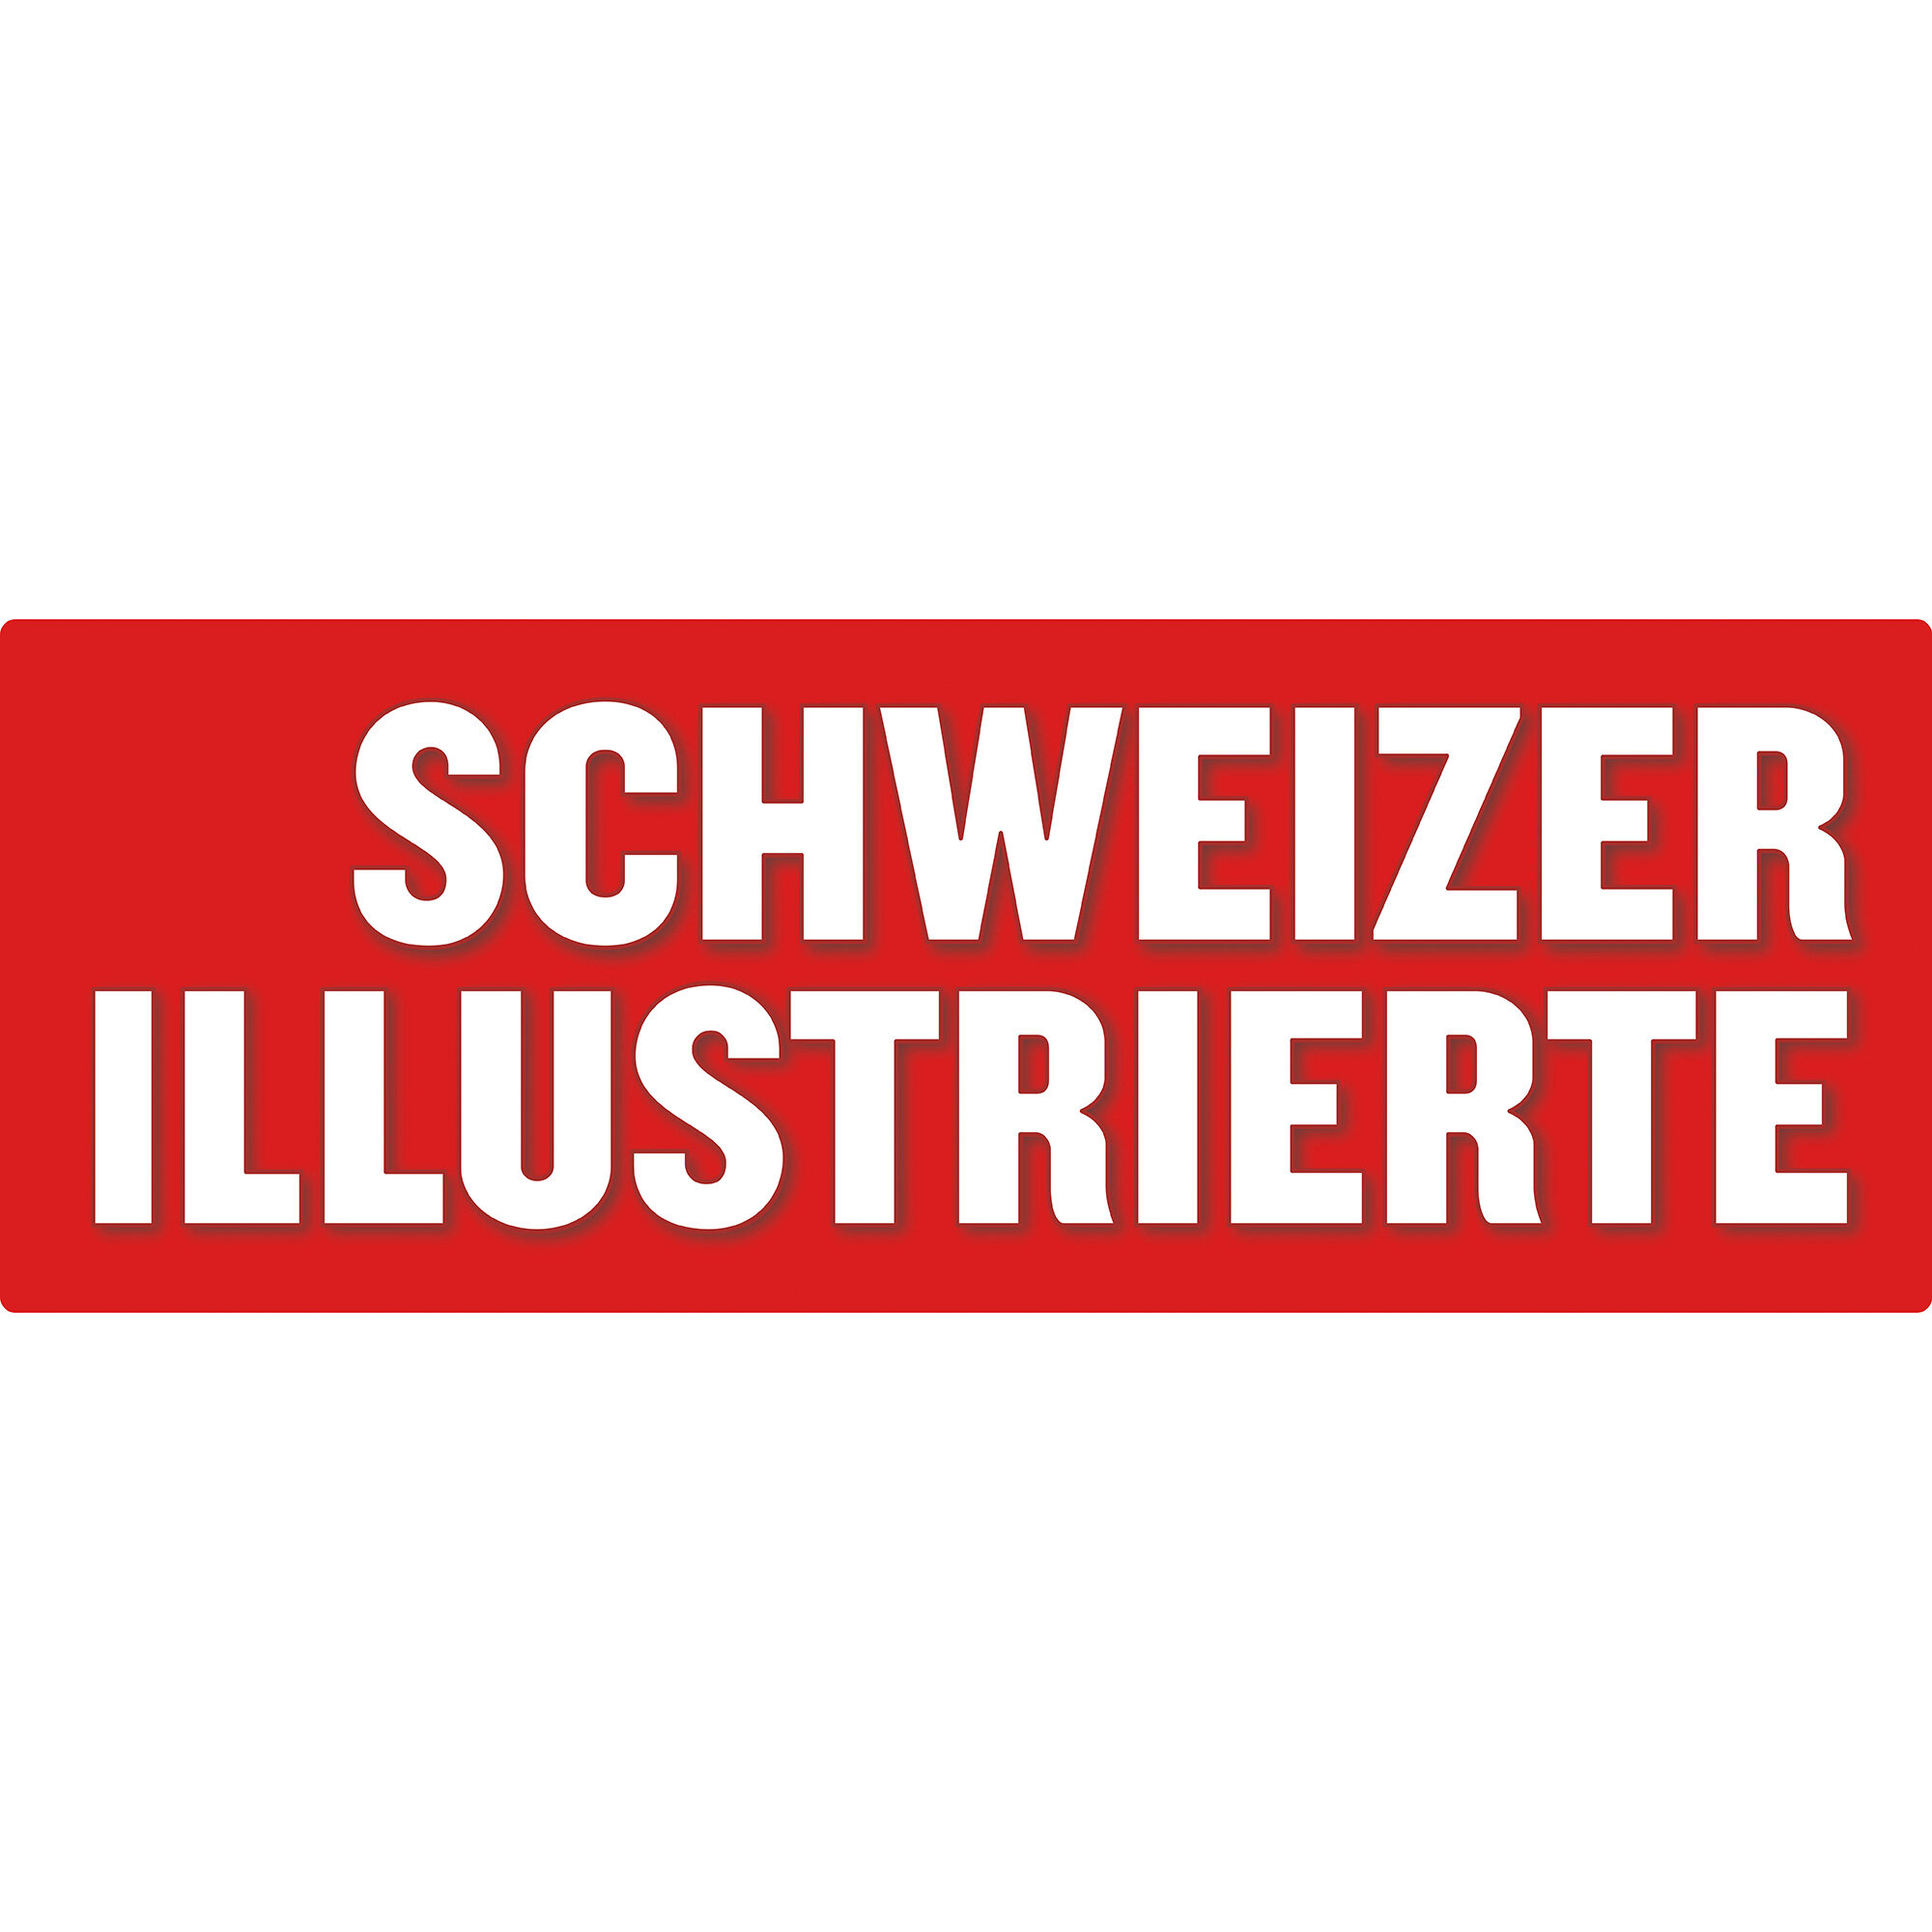 schweizer-illustrierte-logo.jpg